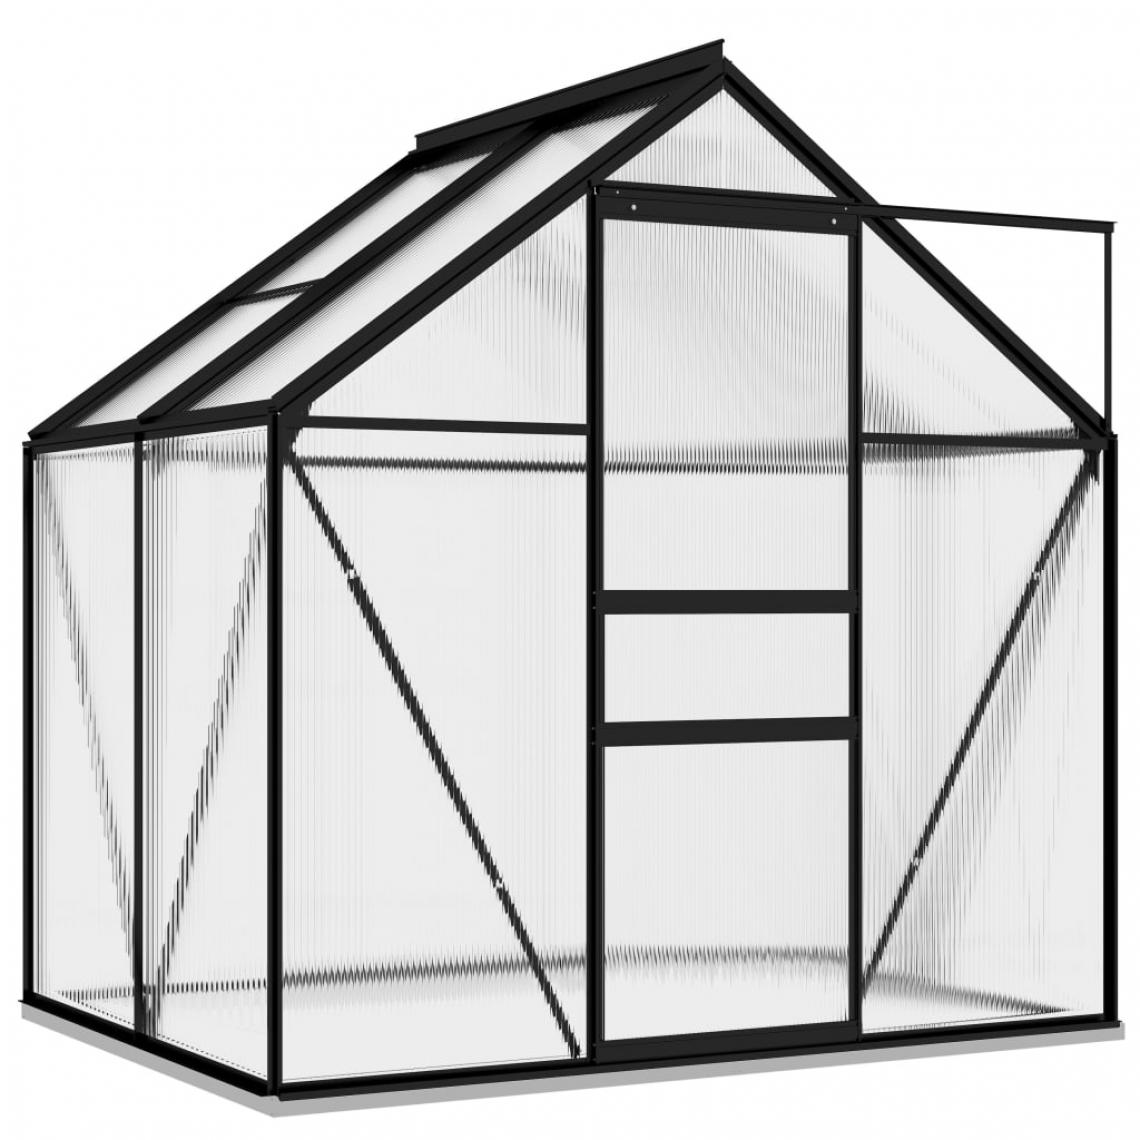 Icaverne - Icaverne - Serres de jardin famille Serre Anthracite Aluminium 2,47 m² - Serres en verre